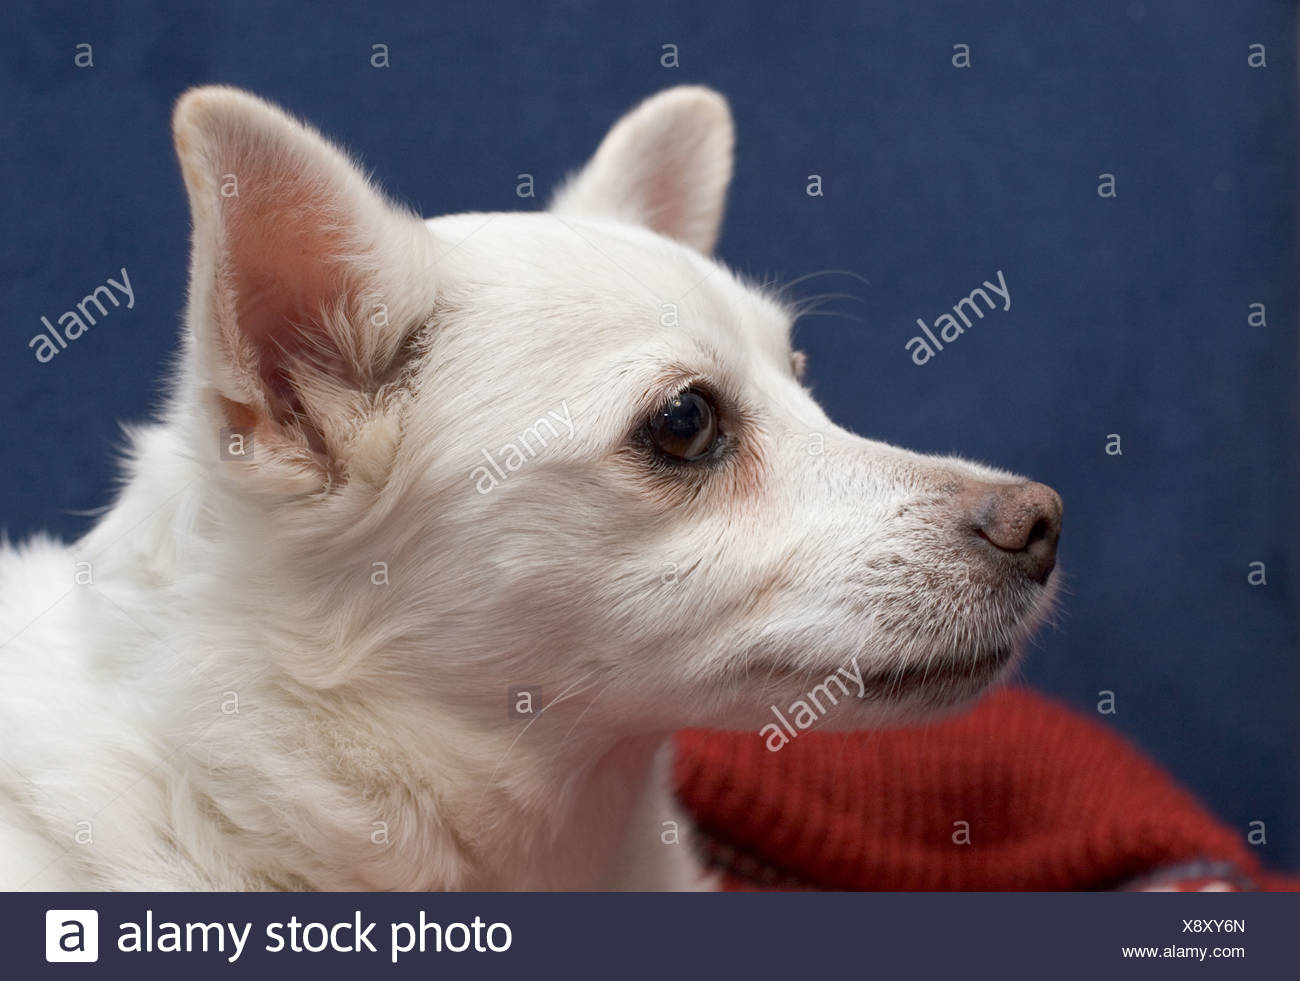 pomeranian cross breed dogs